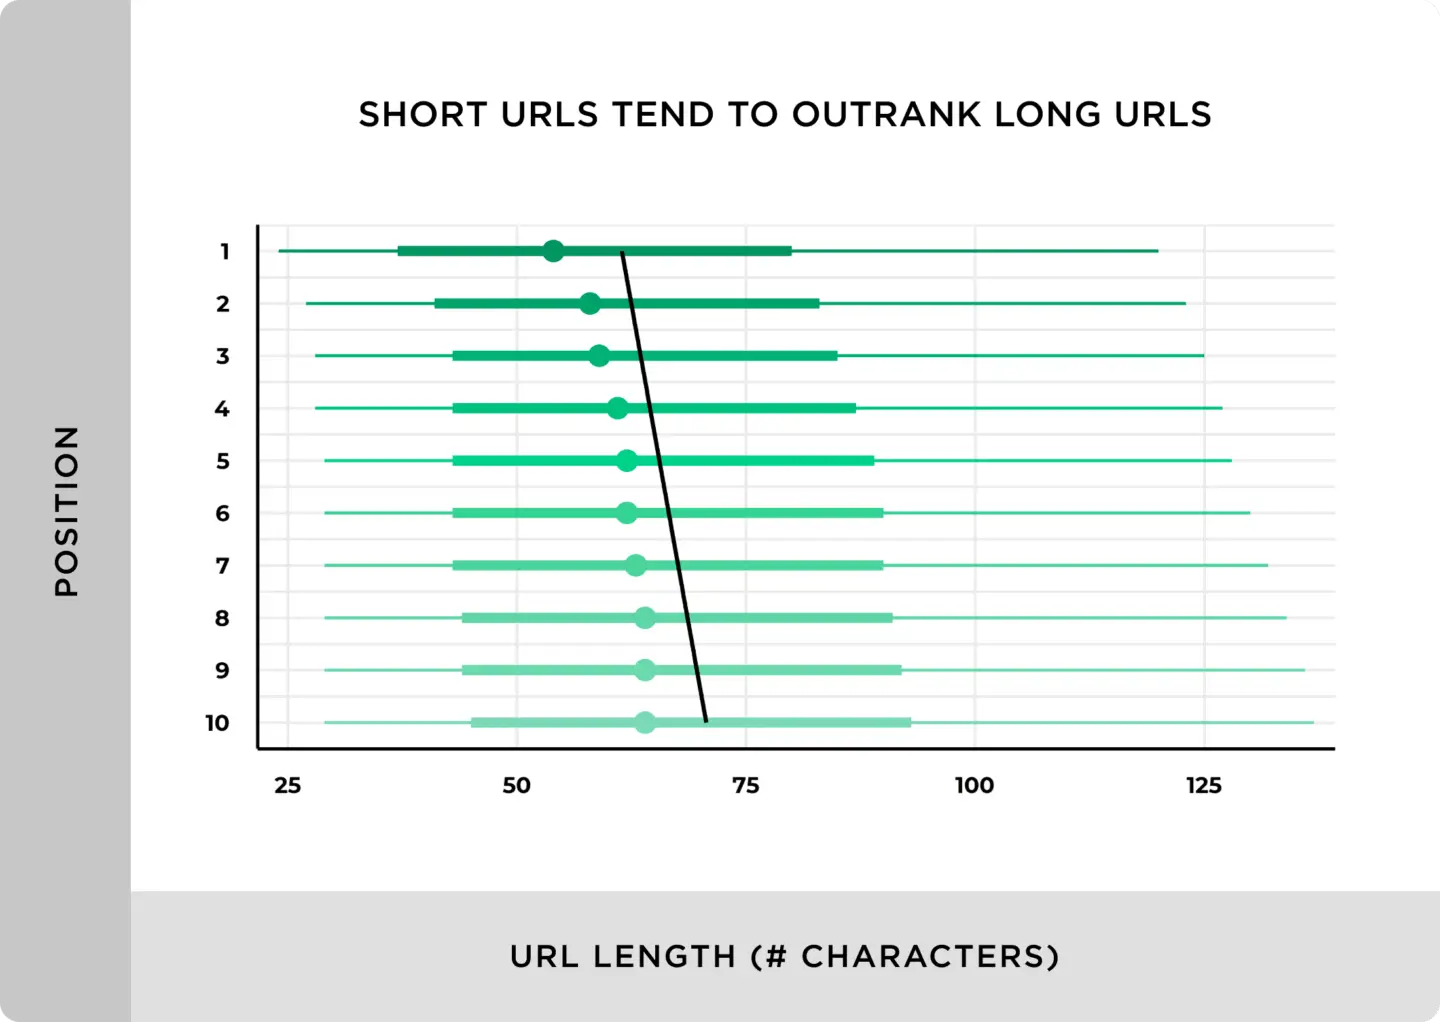 Chúng tôi đã nghiên cứu sâu mối liên quan giữa độ dài URL và Ranks và sự thật đã được lộ ra: Short URLs tốt hơn Long URLs.